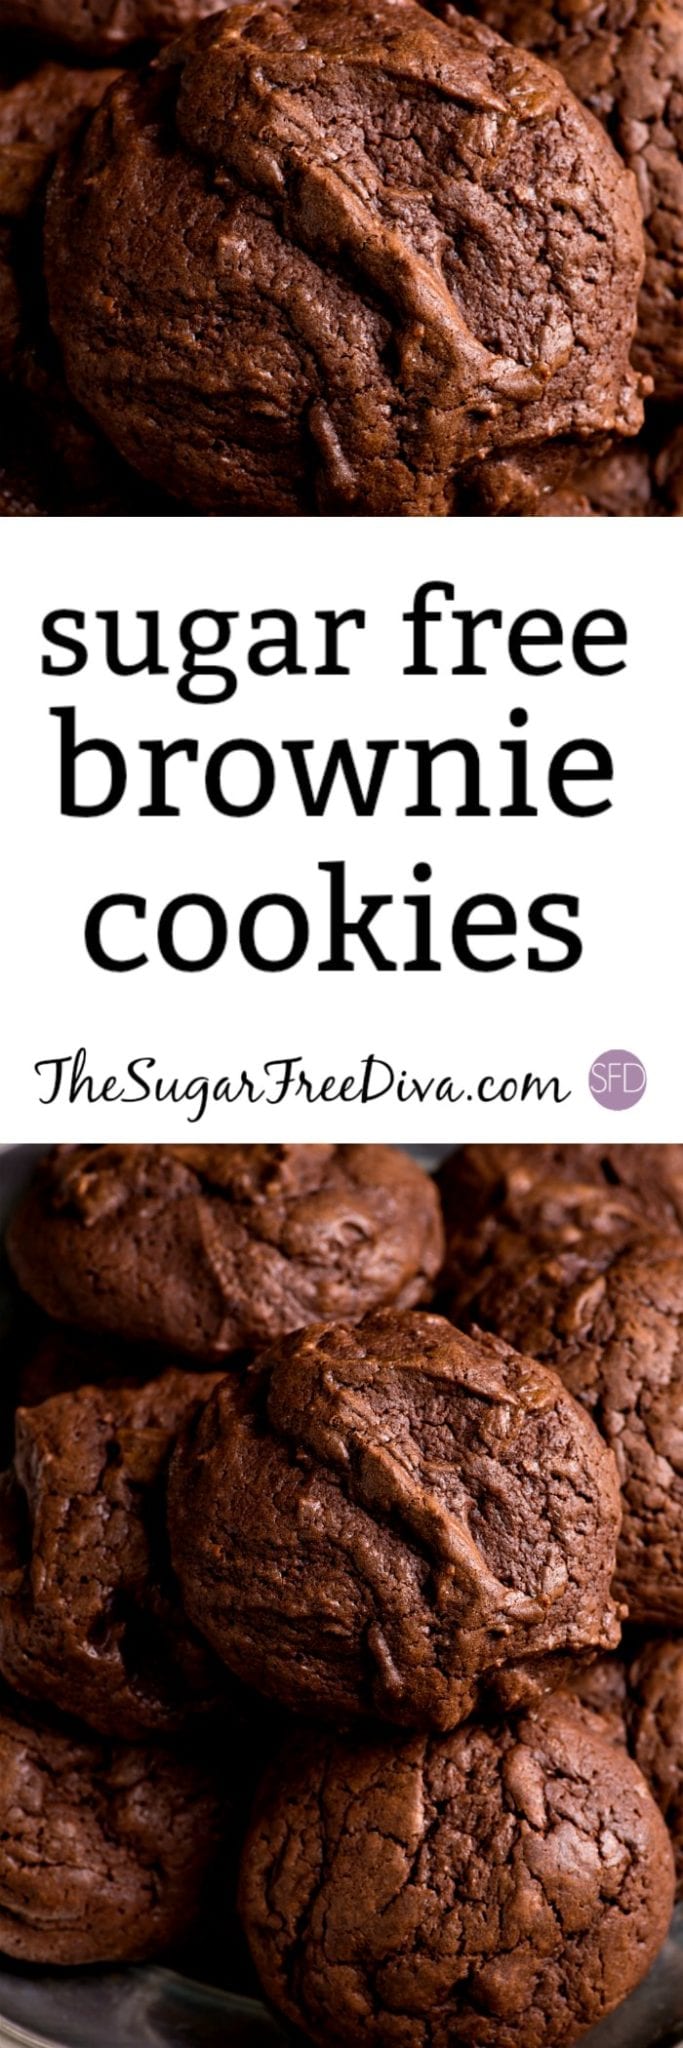 Sugar Free Brownie Cookies